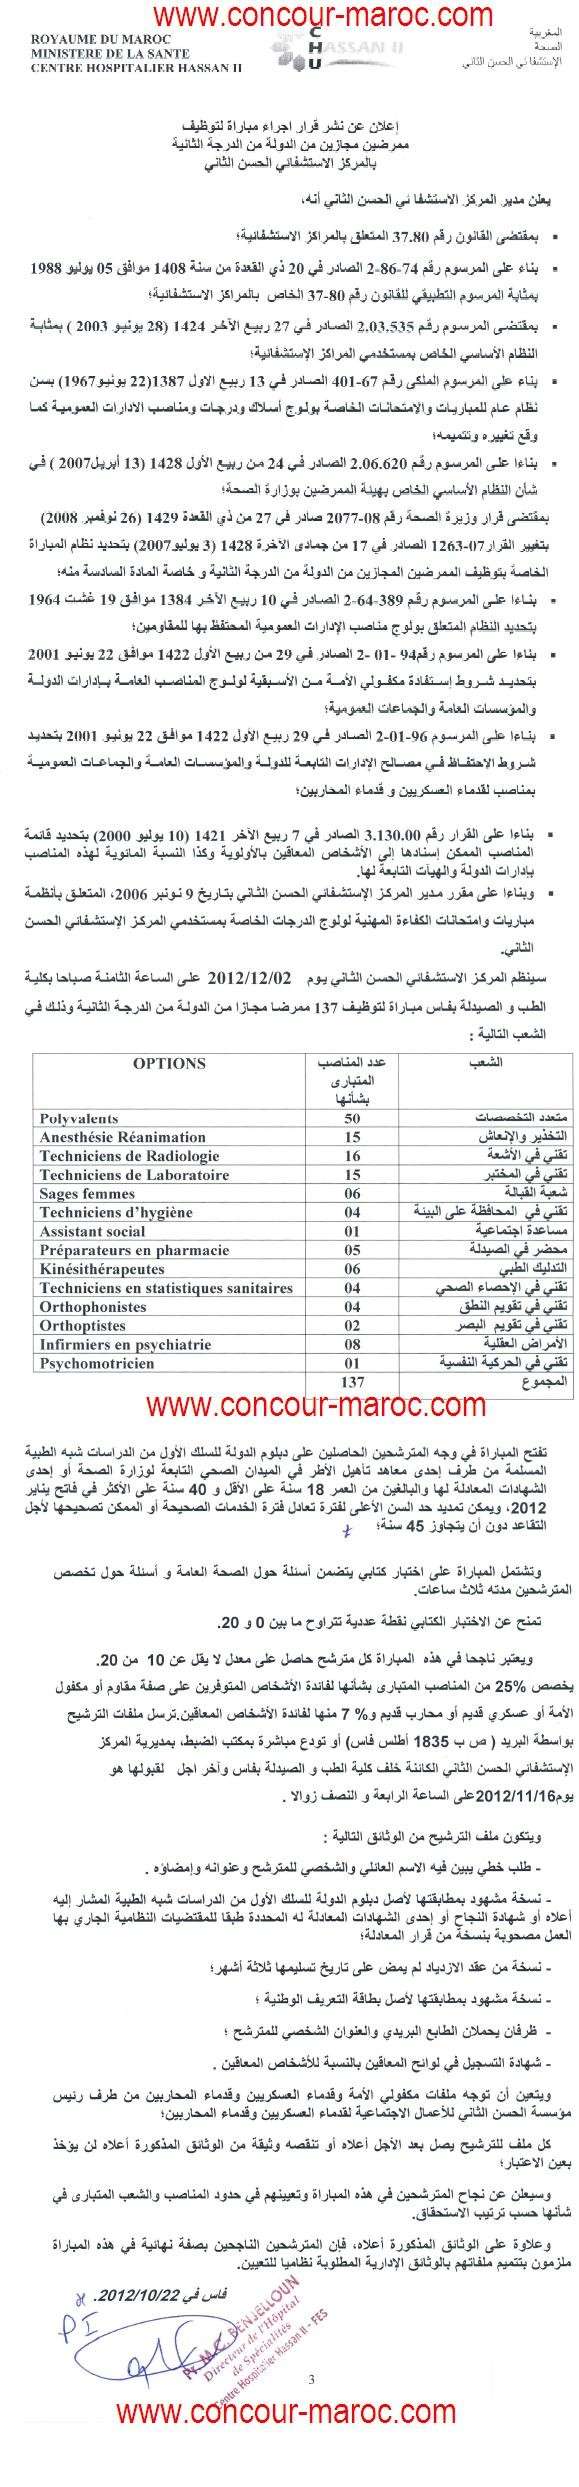 Centre Hospitalier Hassan II recrutement Infirmiers Diplômés d'Etat de 2ème Grade avant le 16 nov 2012 Concou73